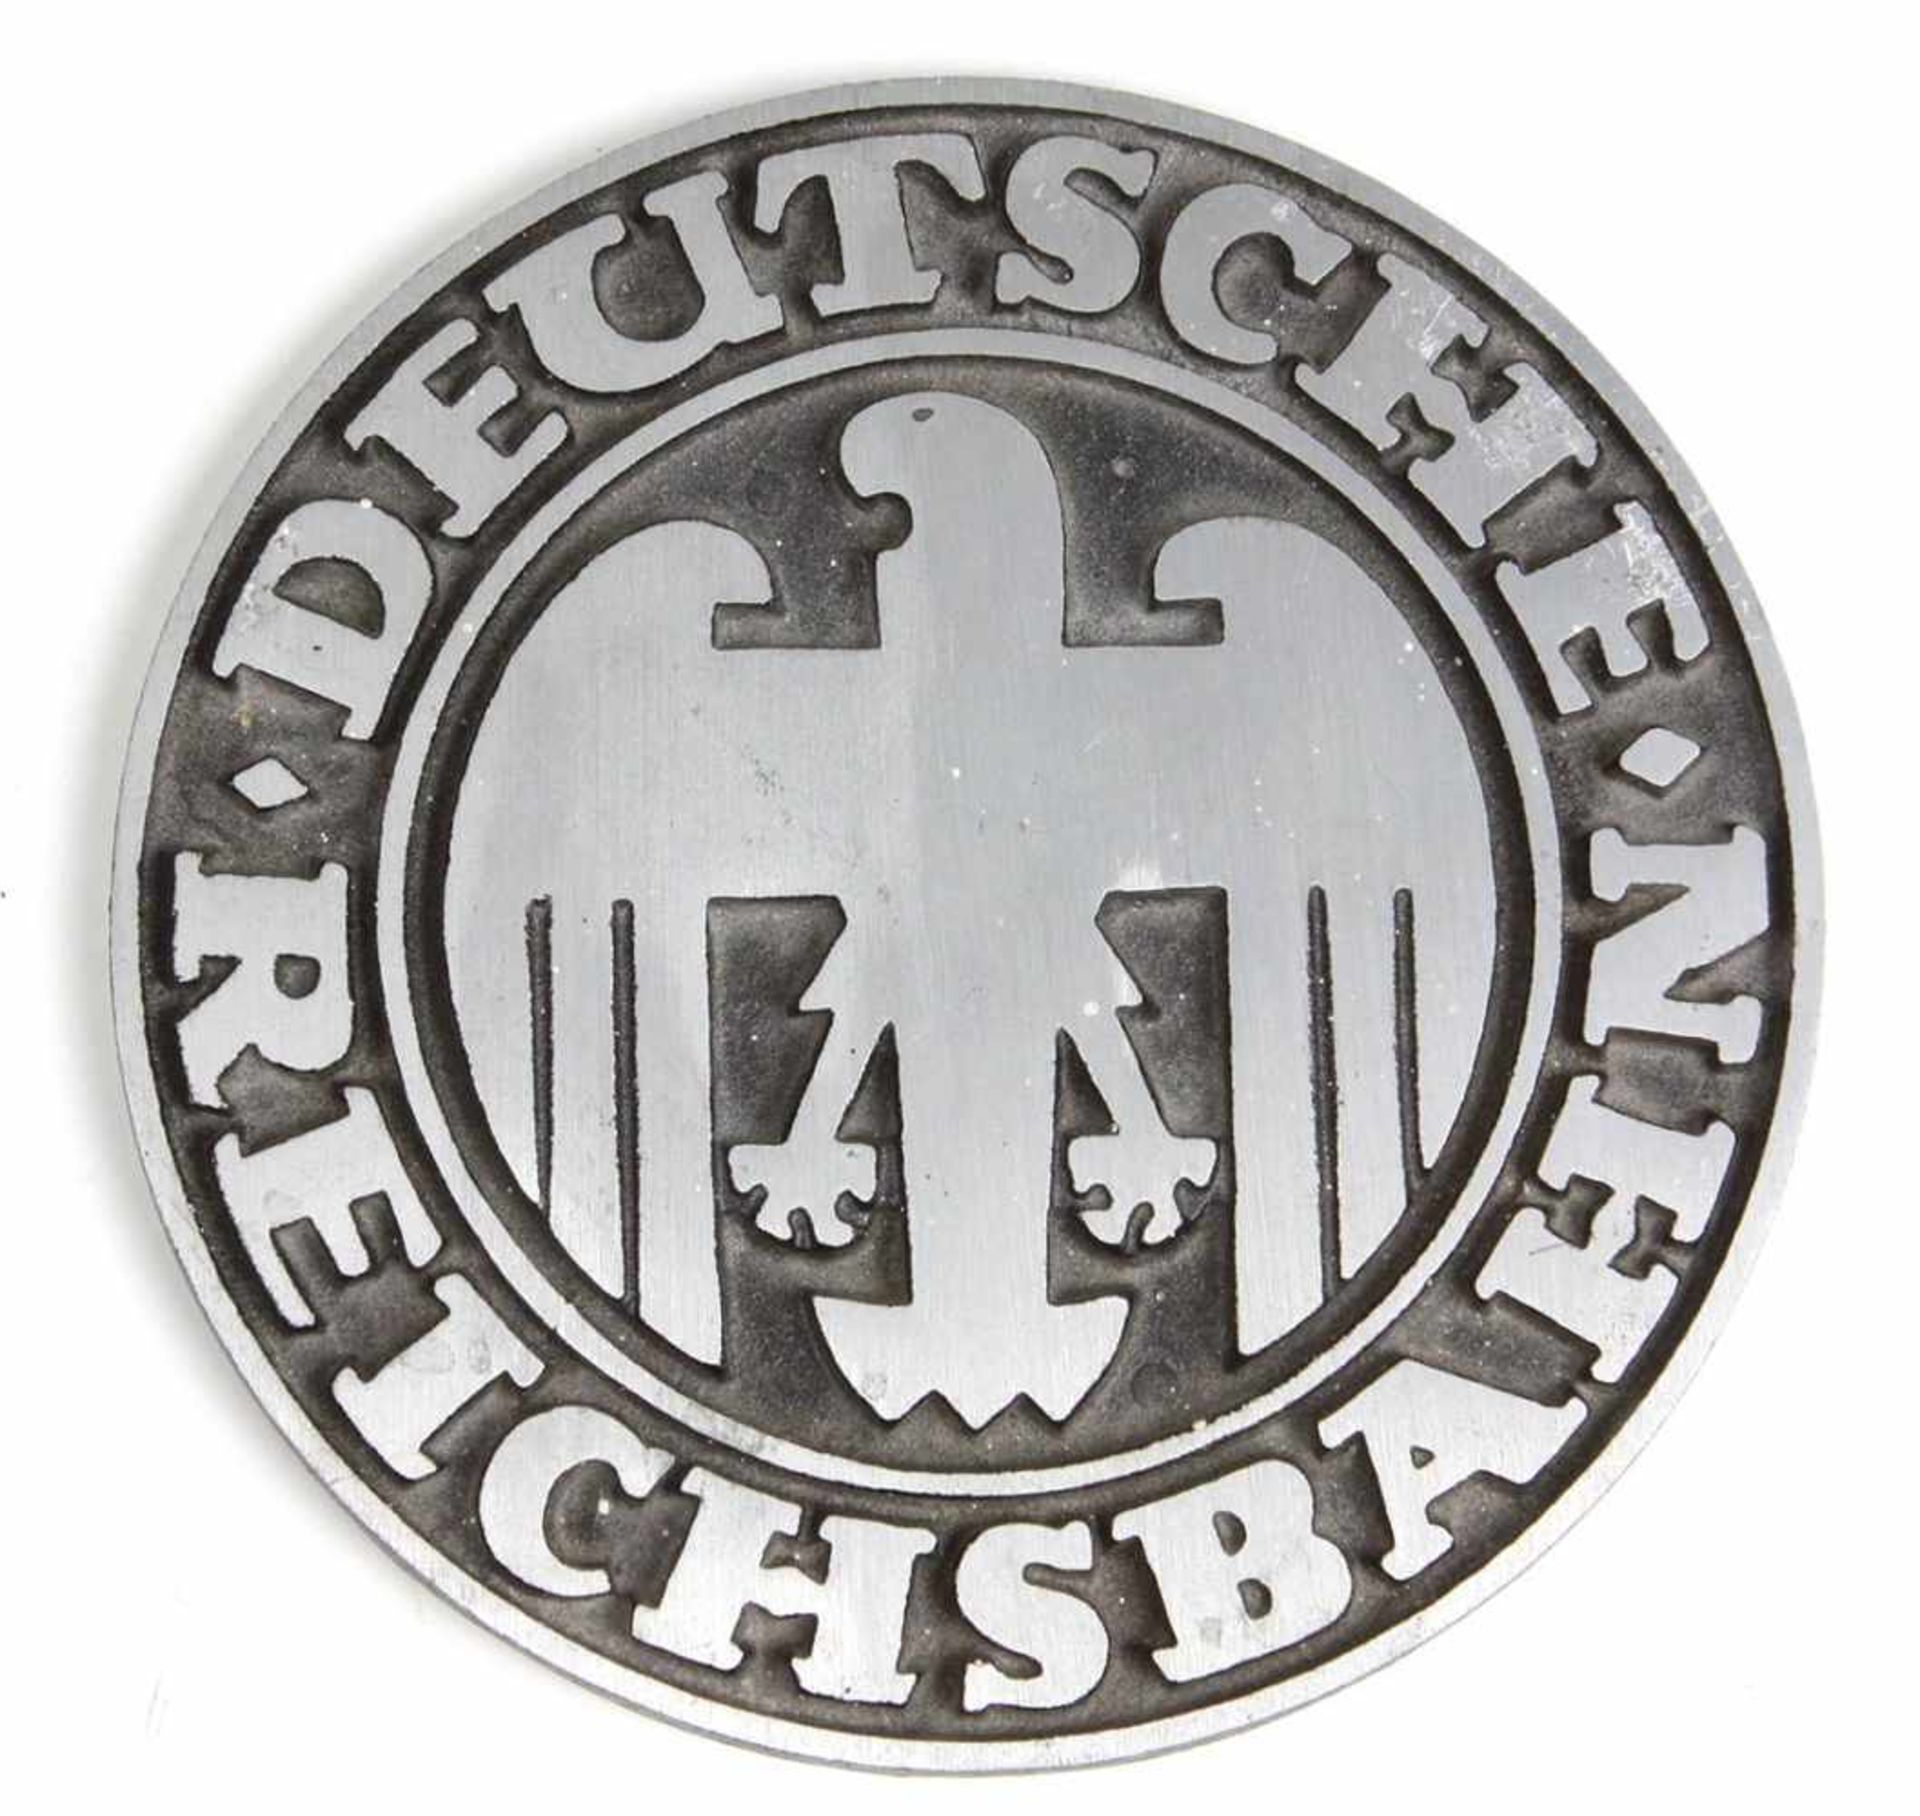 Plakettegroße runde Metall Plakette mit Reichsadler, Umschrift Deutsche Reichsbahn, Ø ca. 14 cm, gut